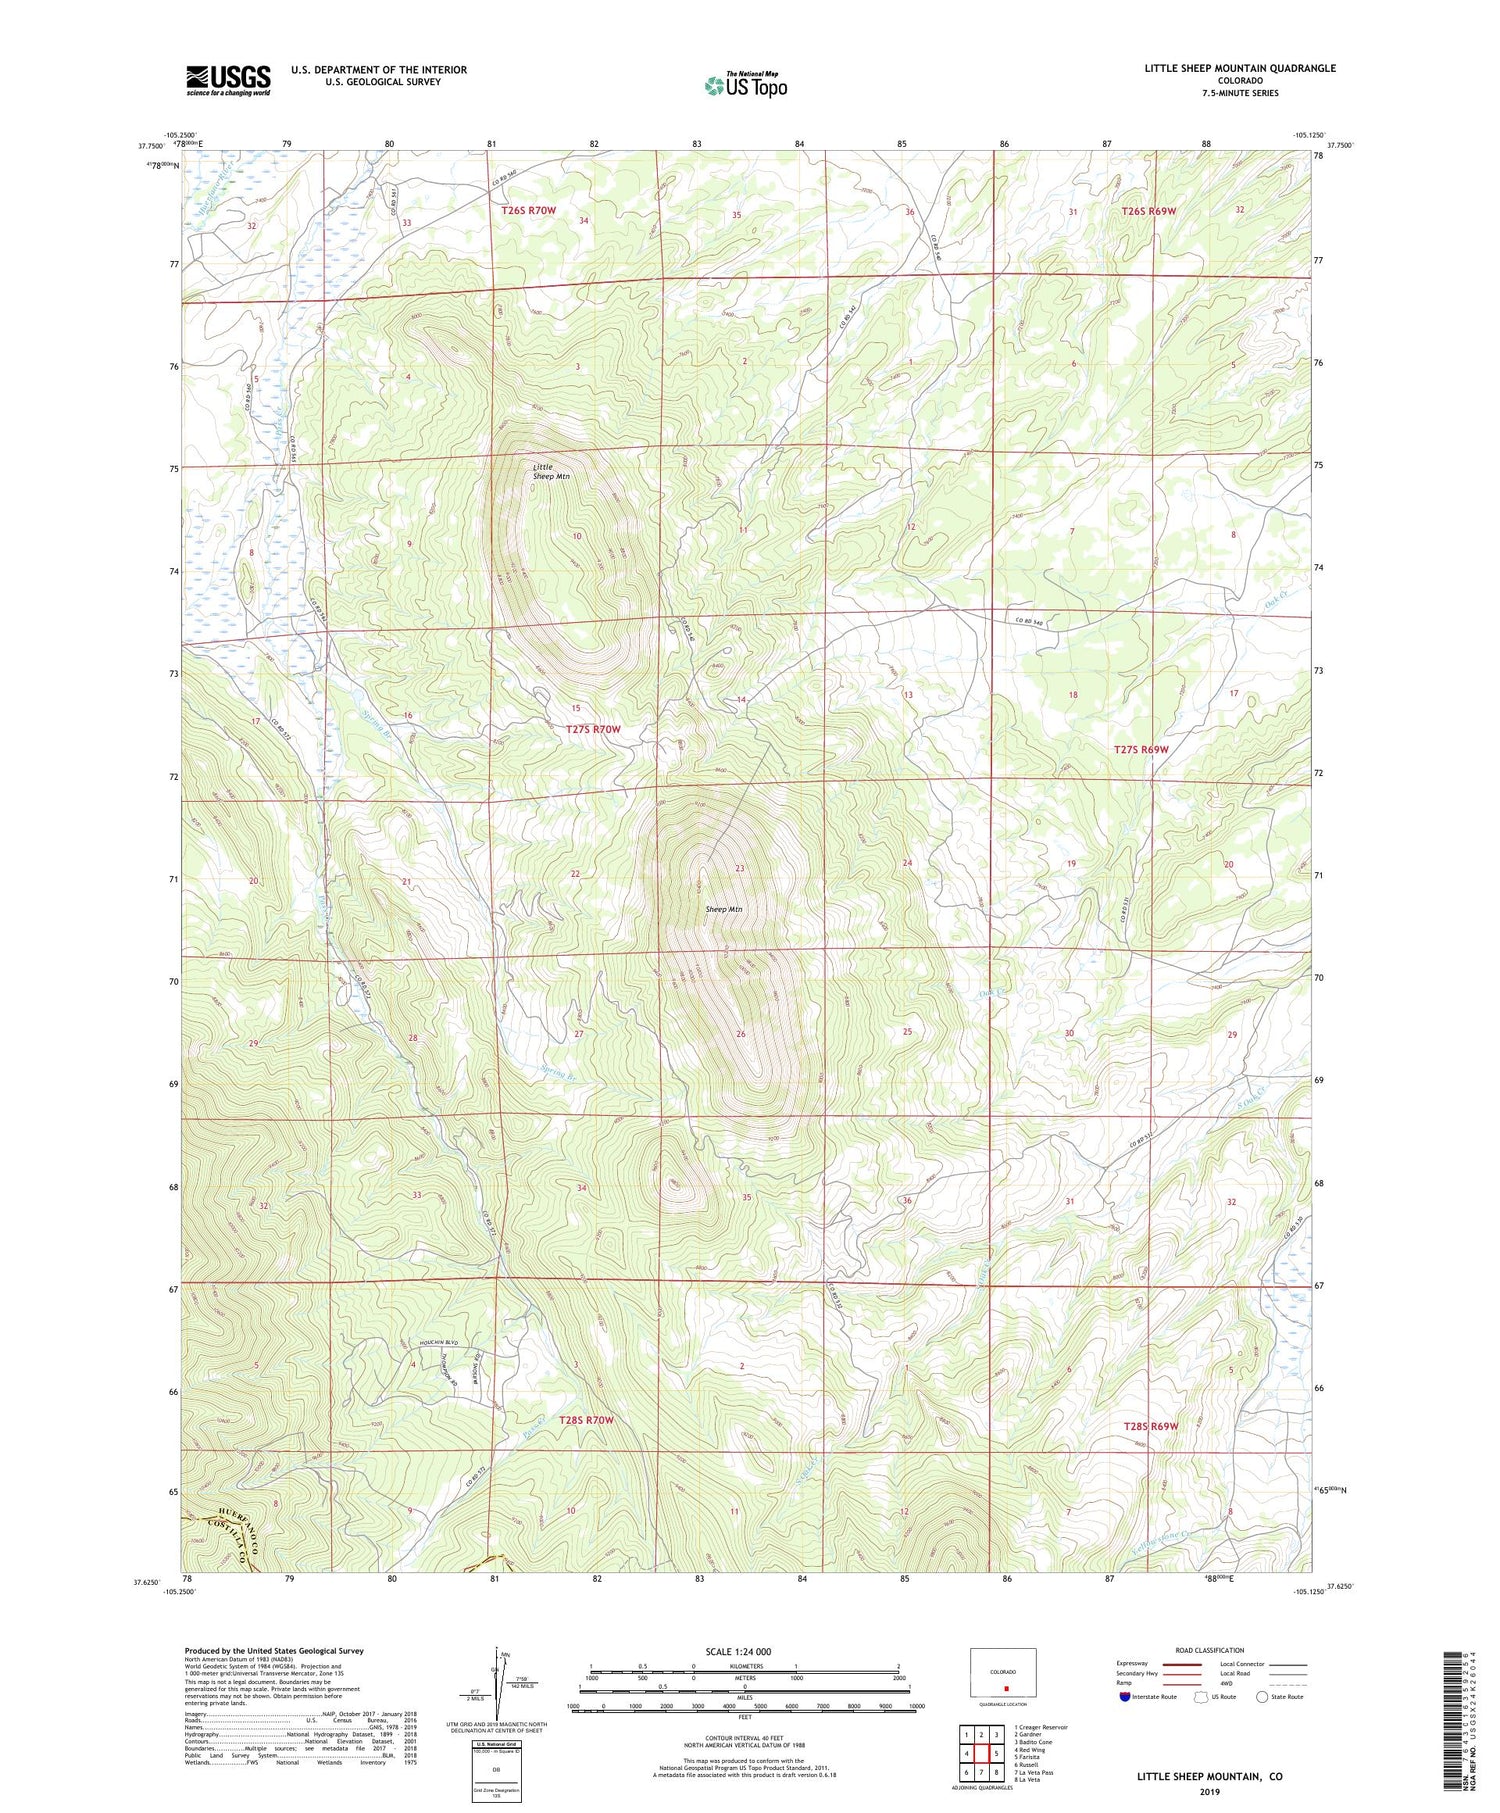 Little Sheep Mountain Colorado US Topo Map Image